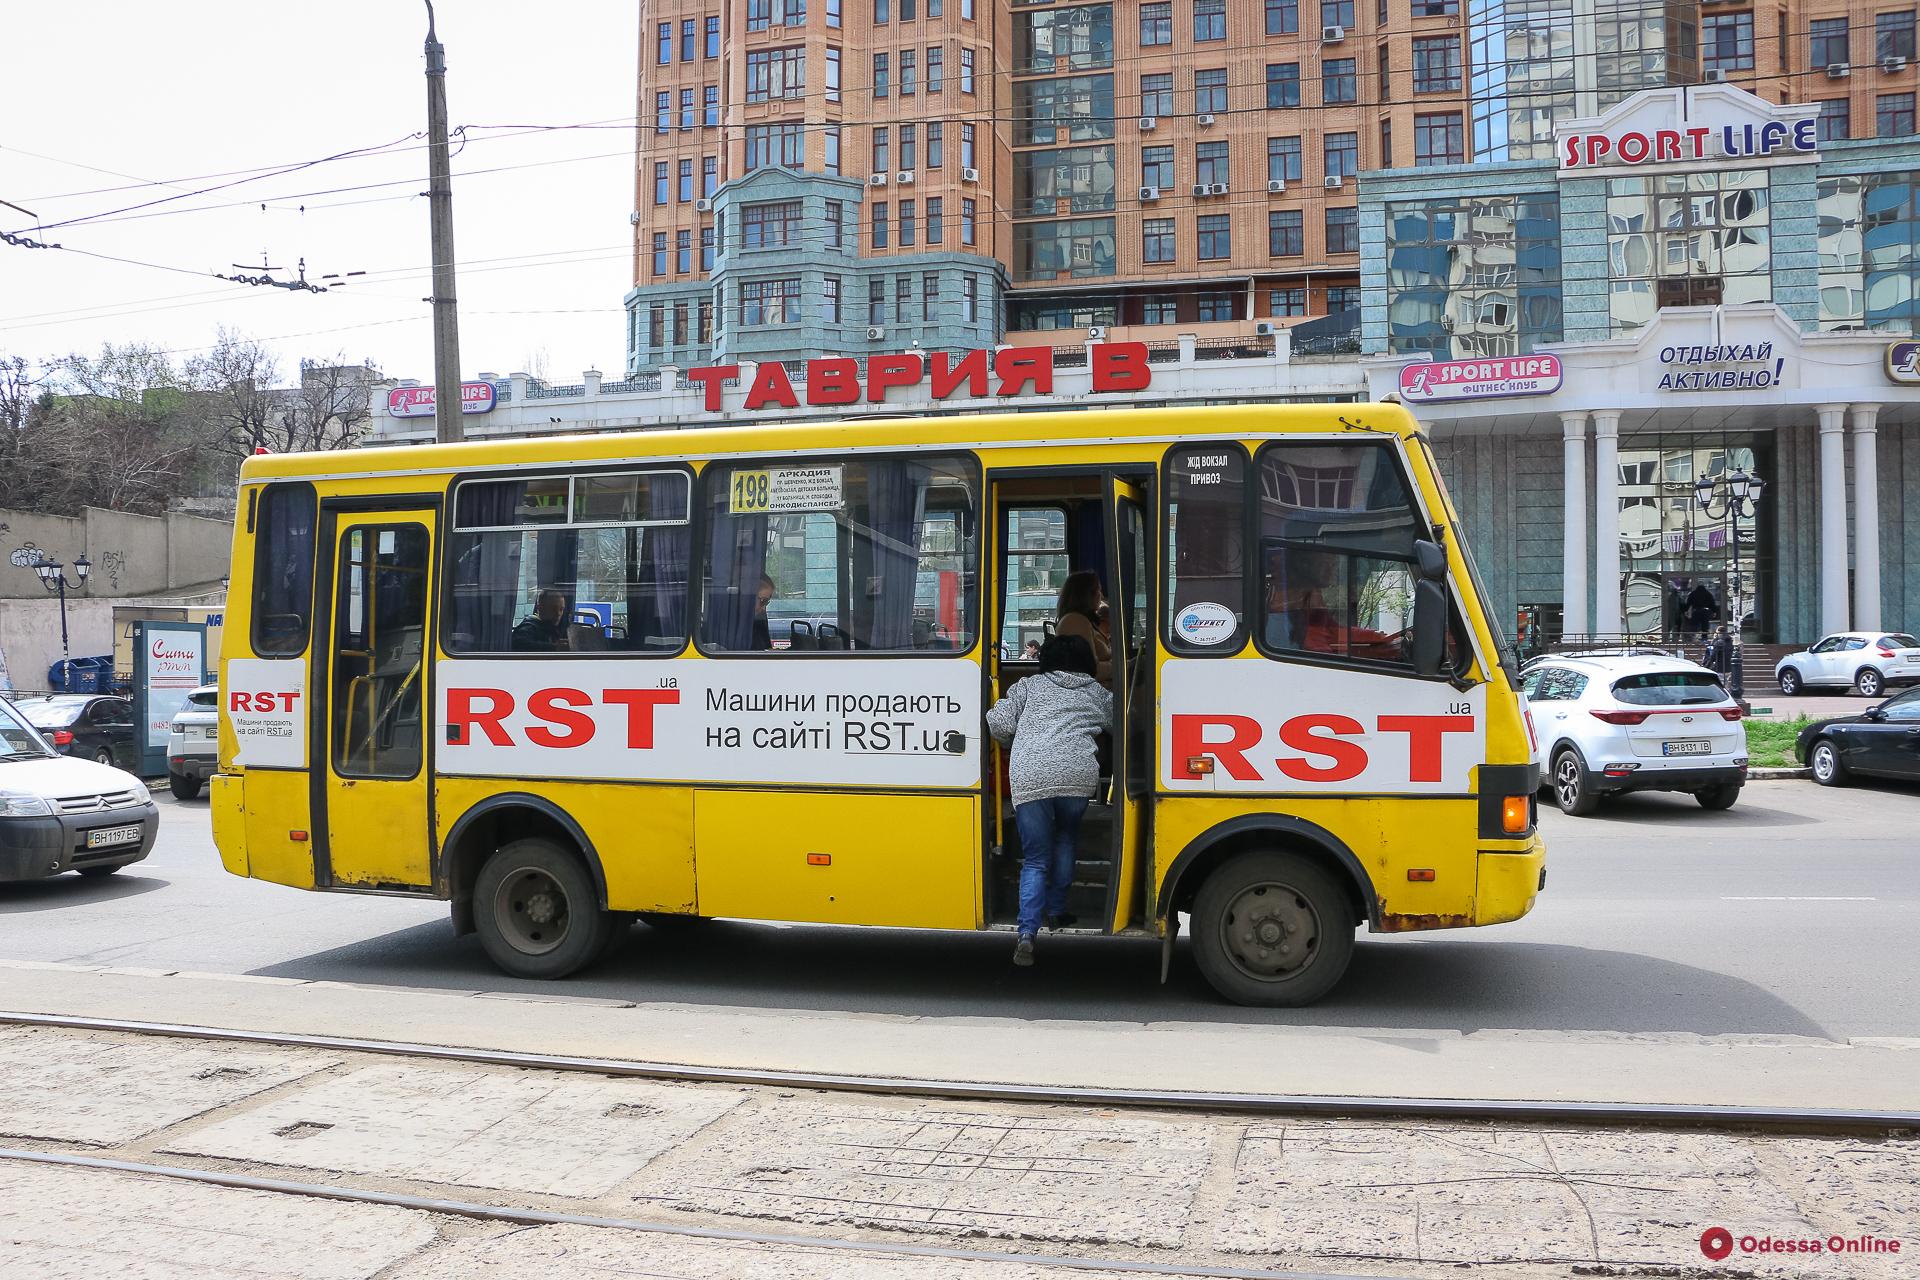 Опубликовано расписание одесских автобусов для перевозки людей с инвалидностью